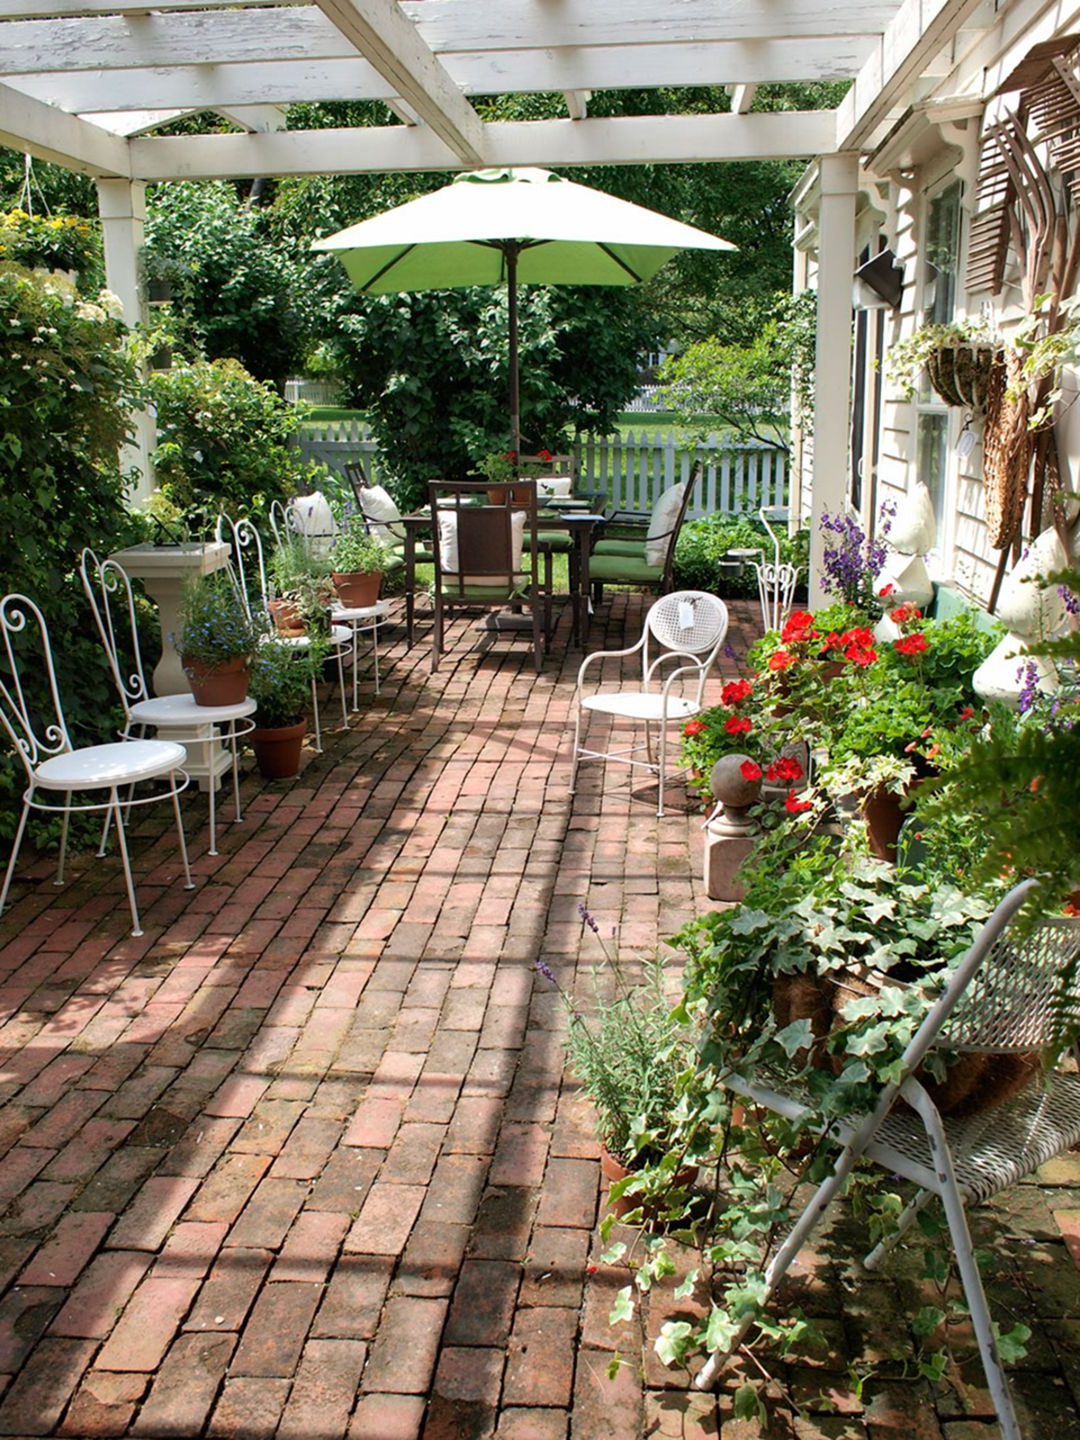 10 Incredible Backyard Garden Design Ideas In A Low Budget